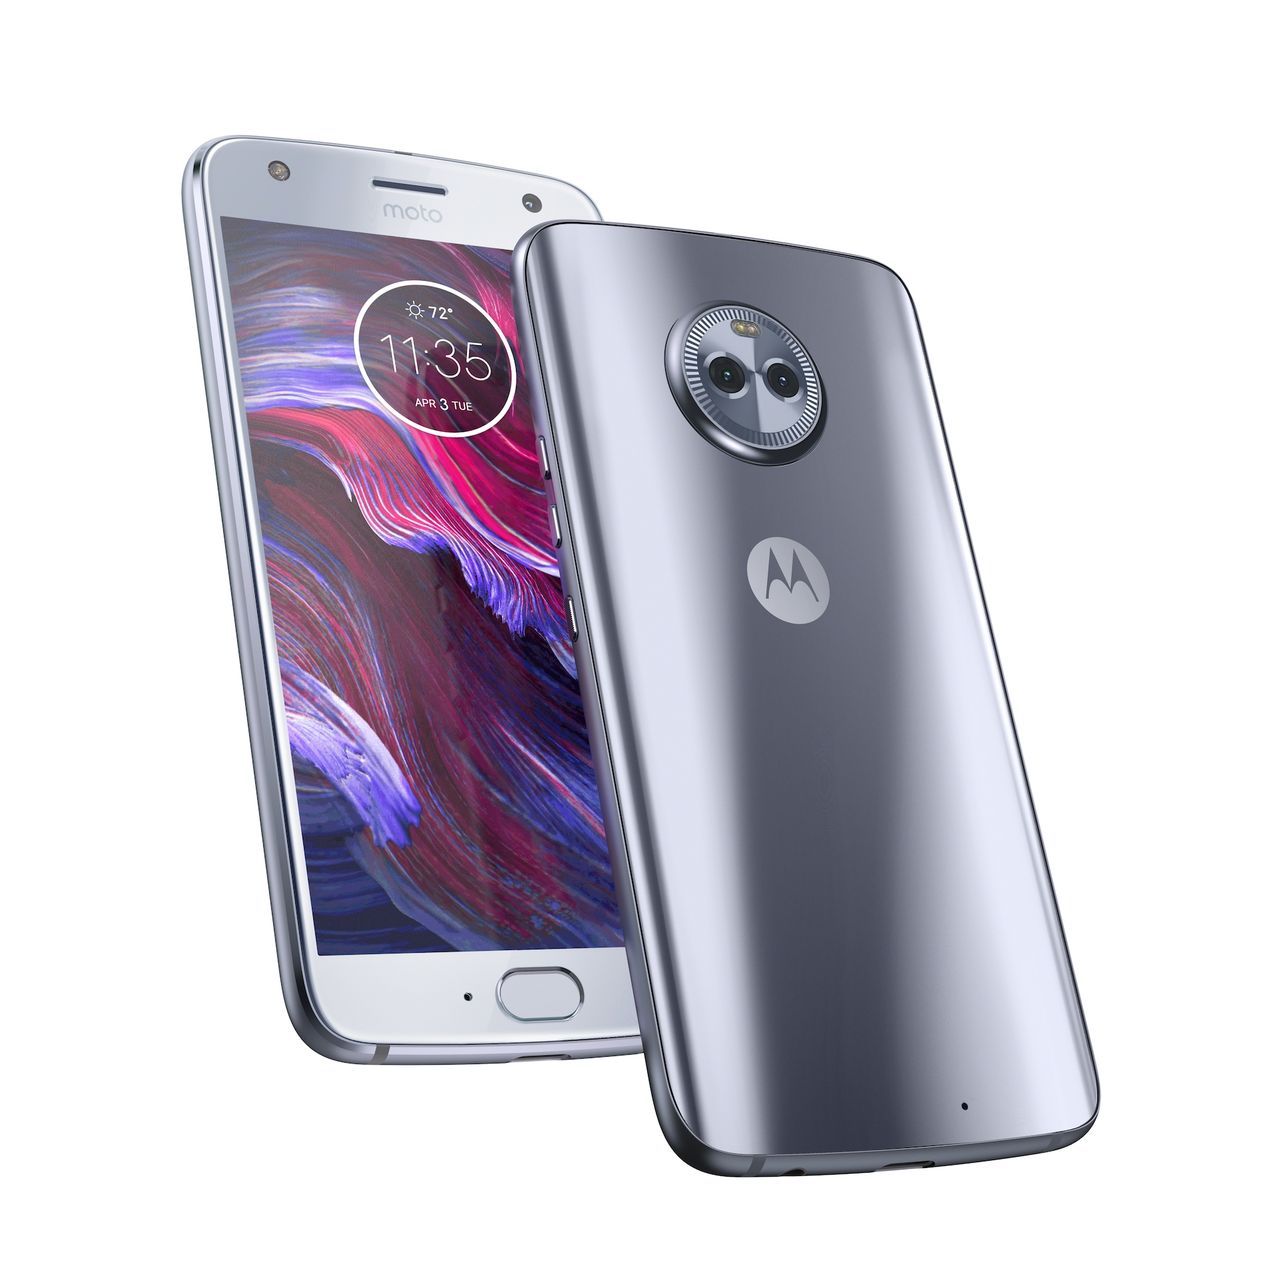 Motorola Moto X4 oficjalnie. Wzornictwo premium, wodoszczelność i podwójny aparat w średniej półce